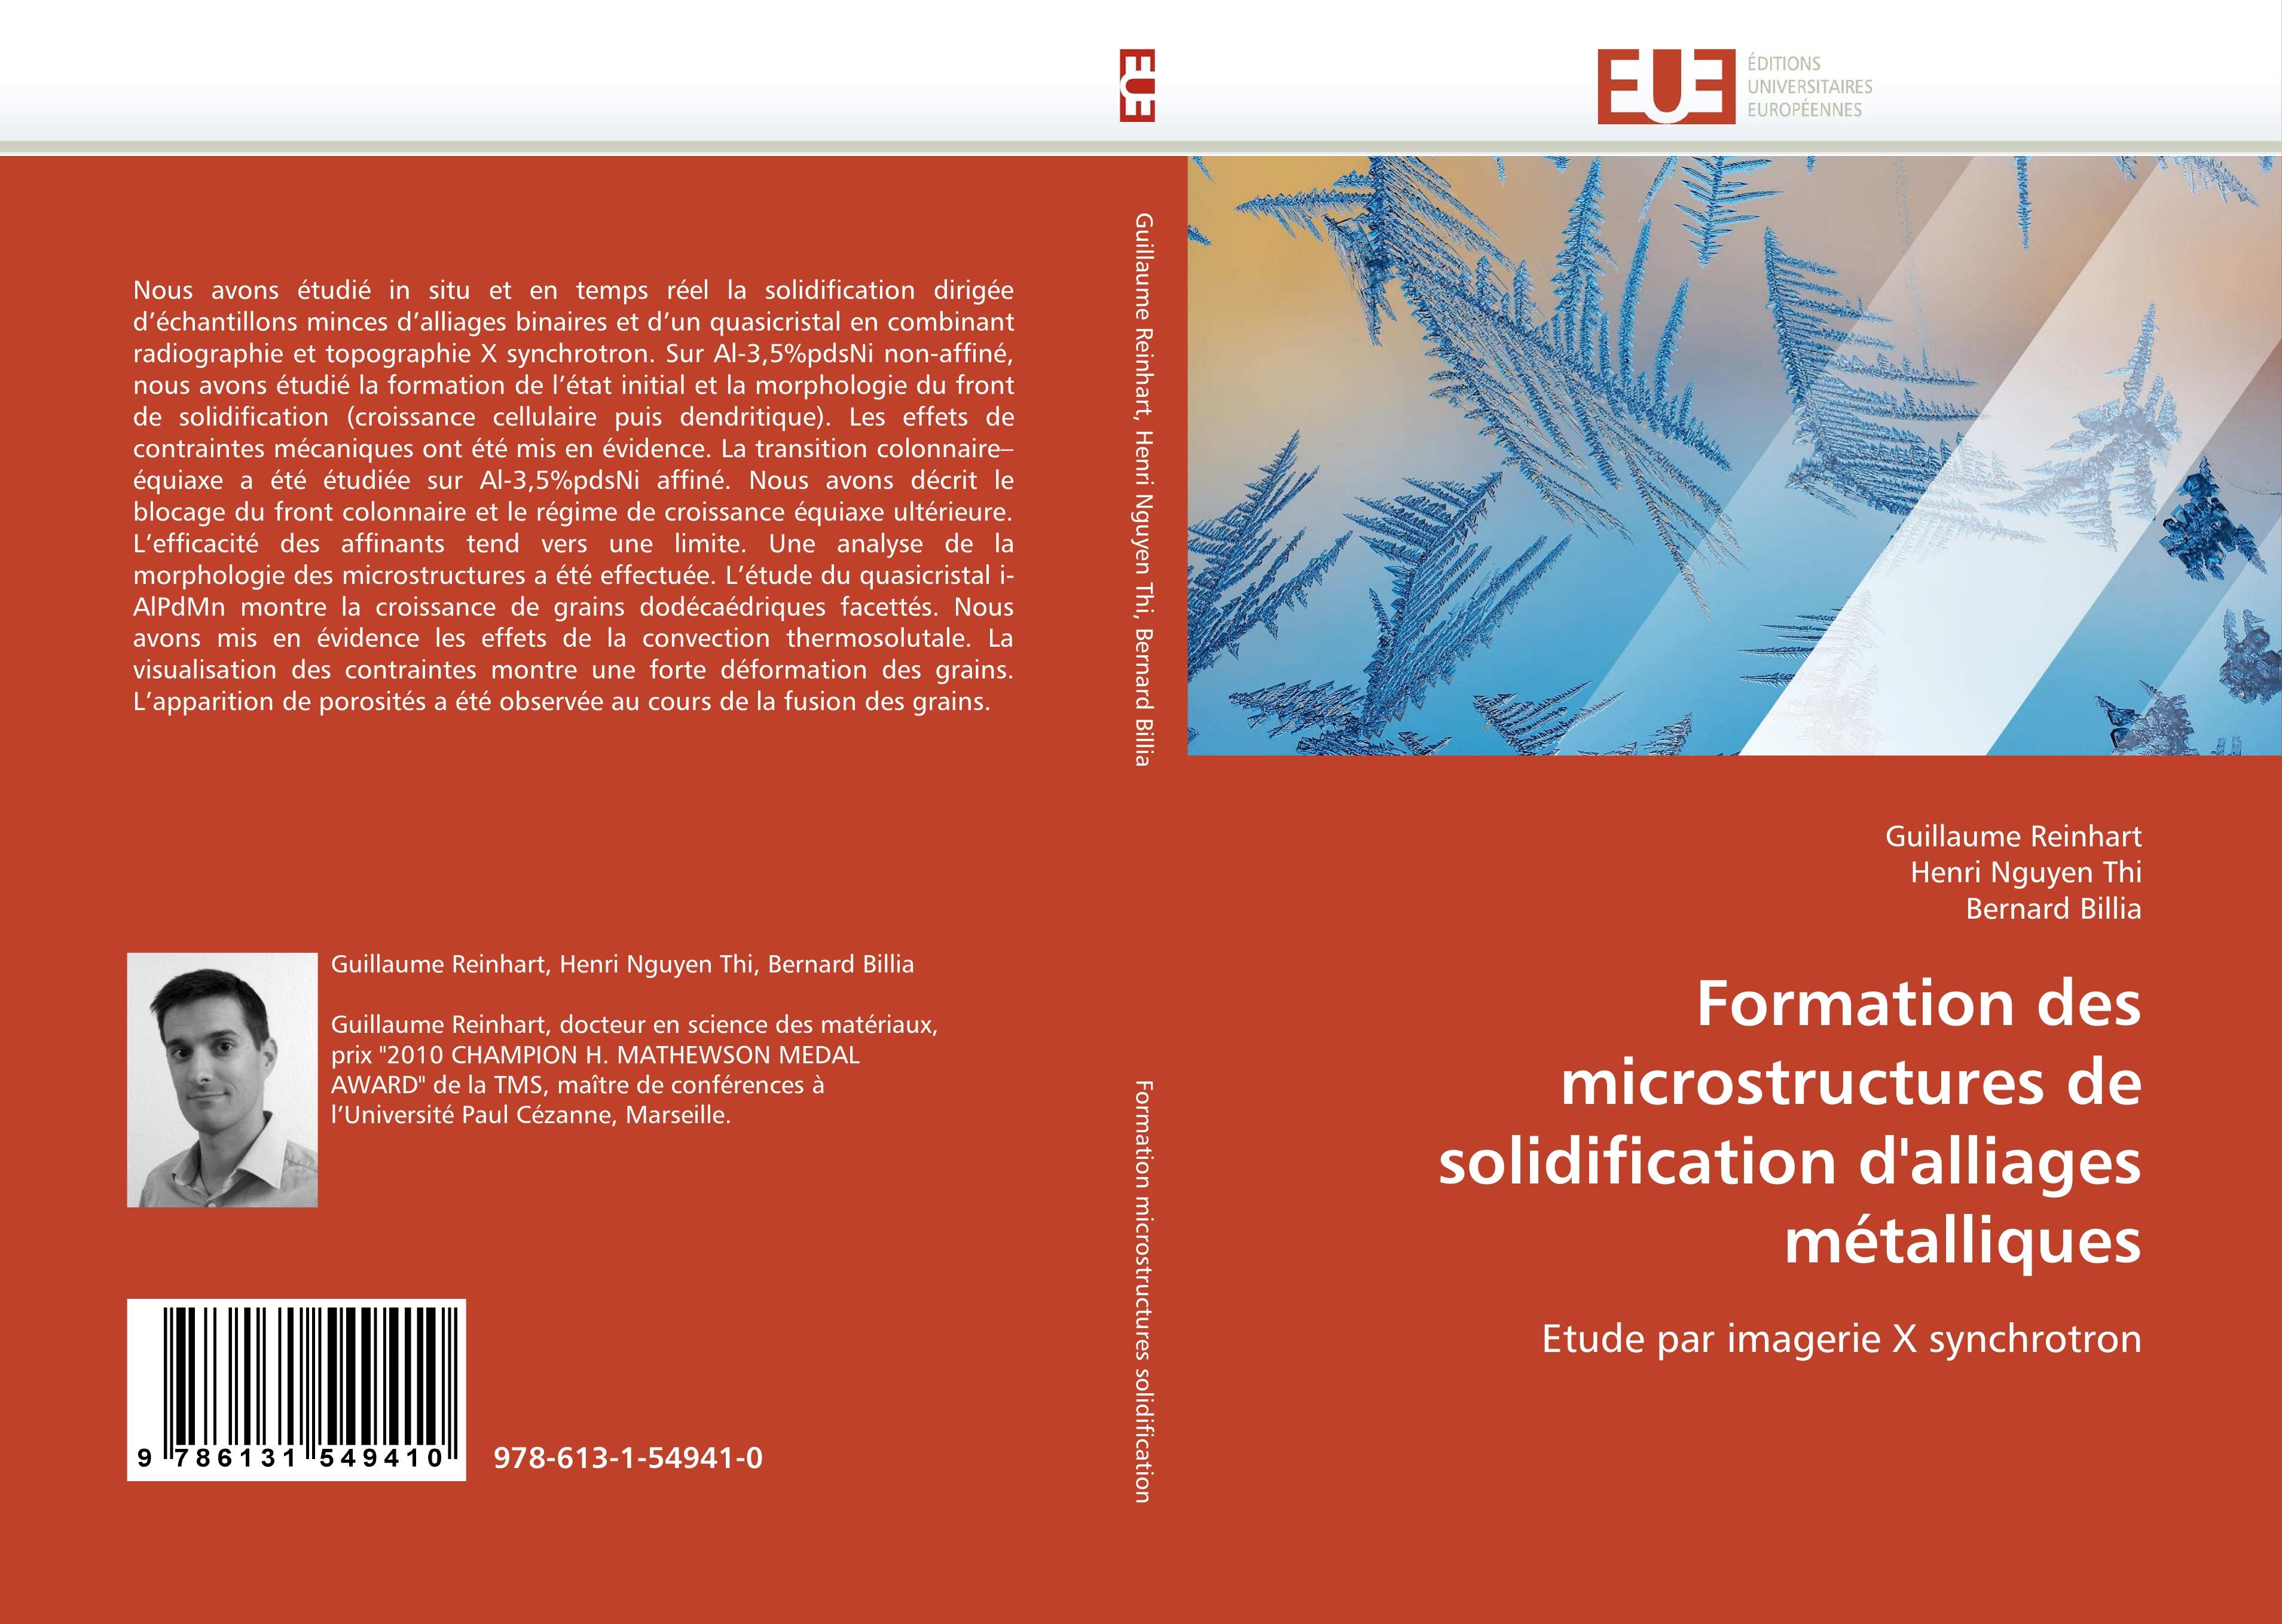 Formation des microstructures de solidification d alliages métalliques - Guillaume Reinhart Henri Nguyen Thi Bernard Billia